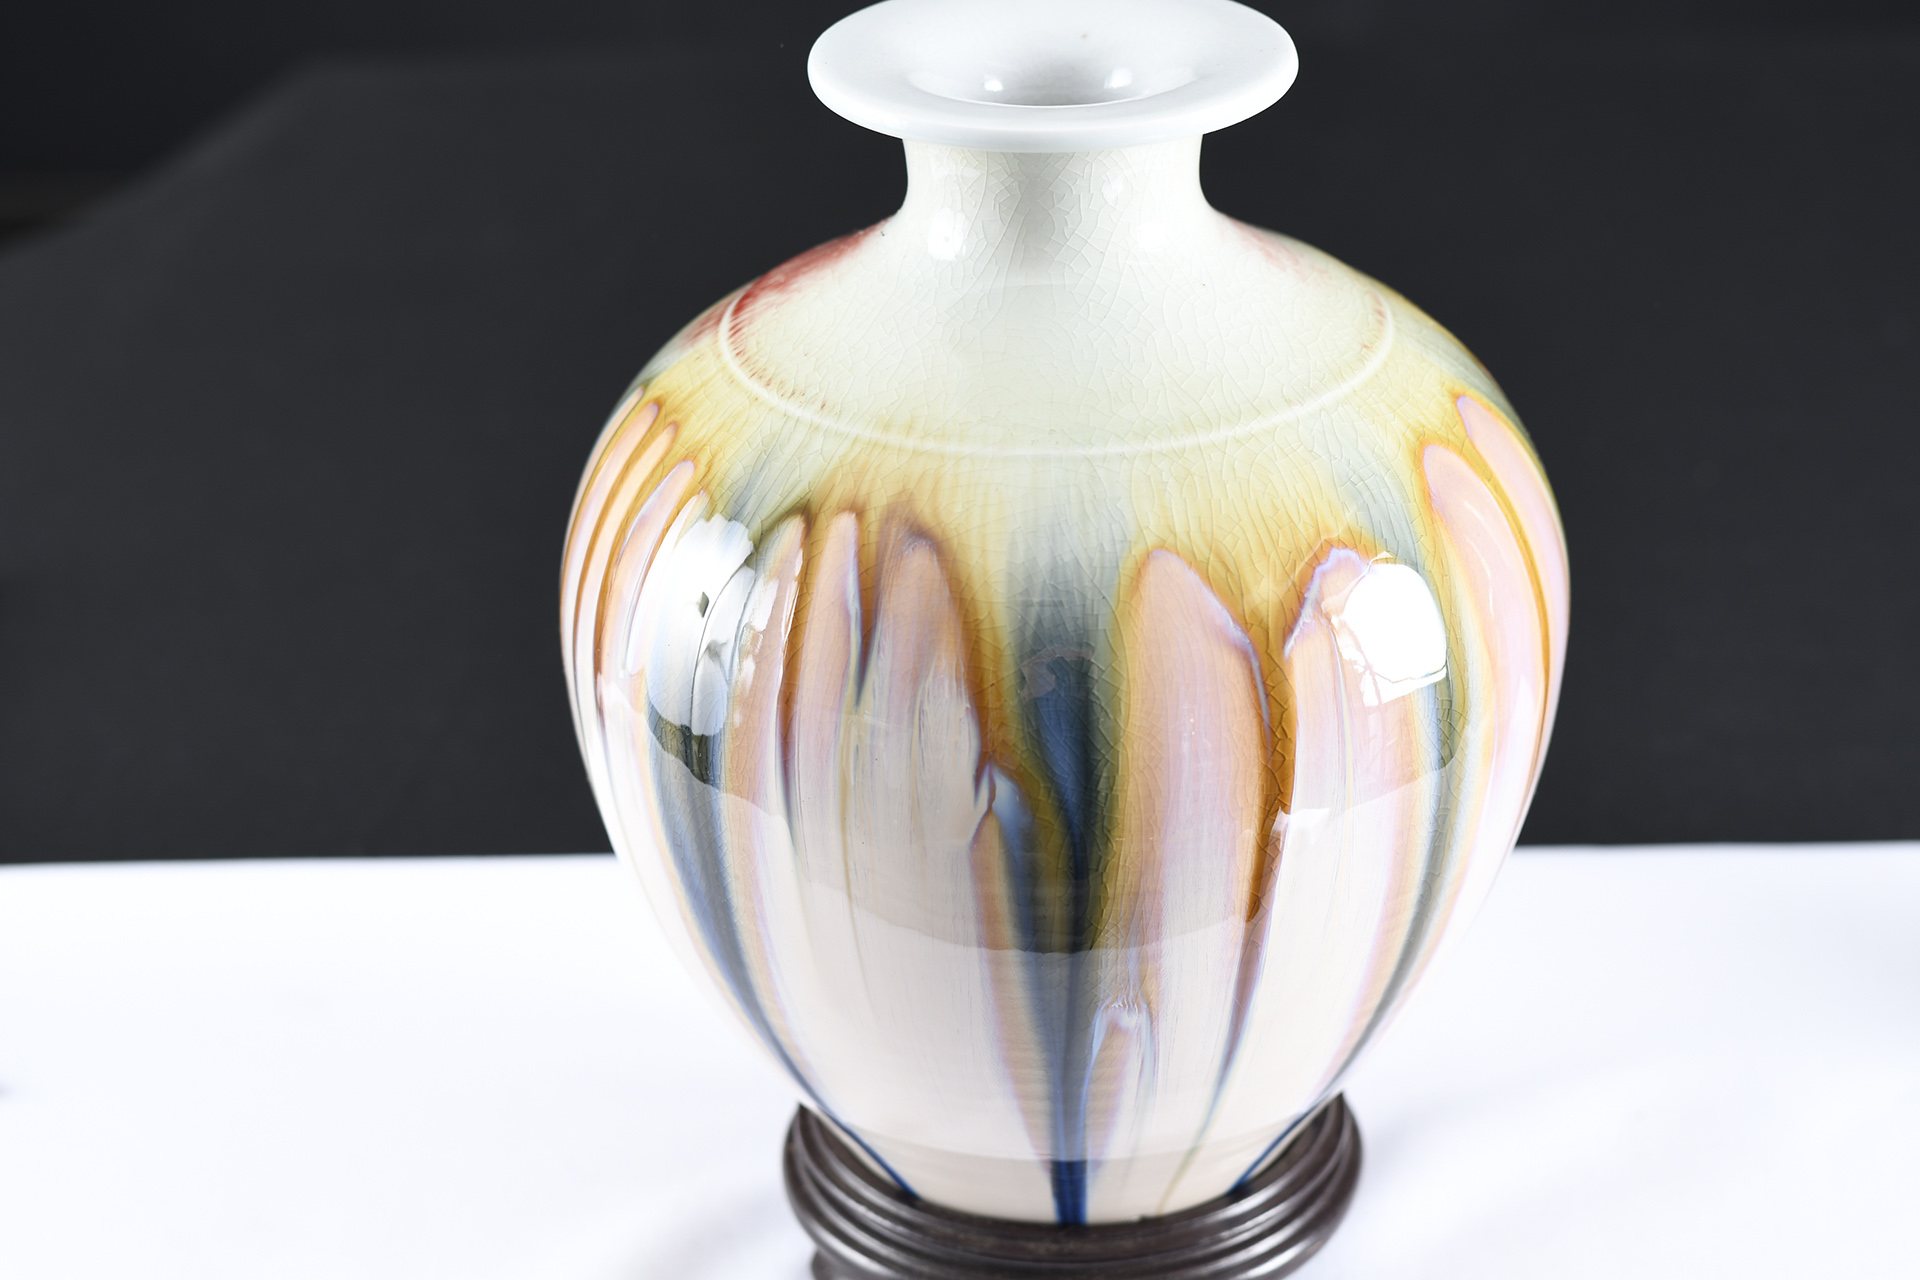 Chinese Porcelain Handmade Art Vase